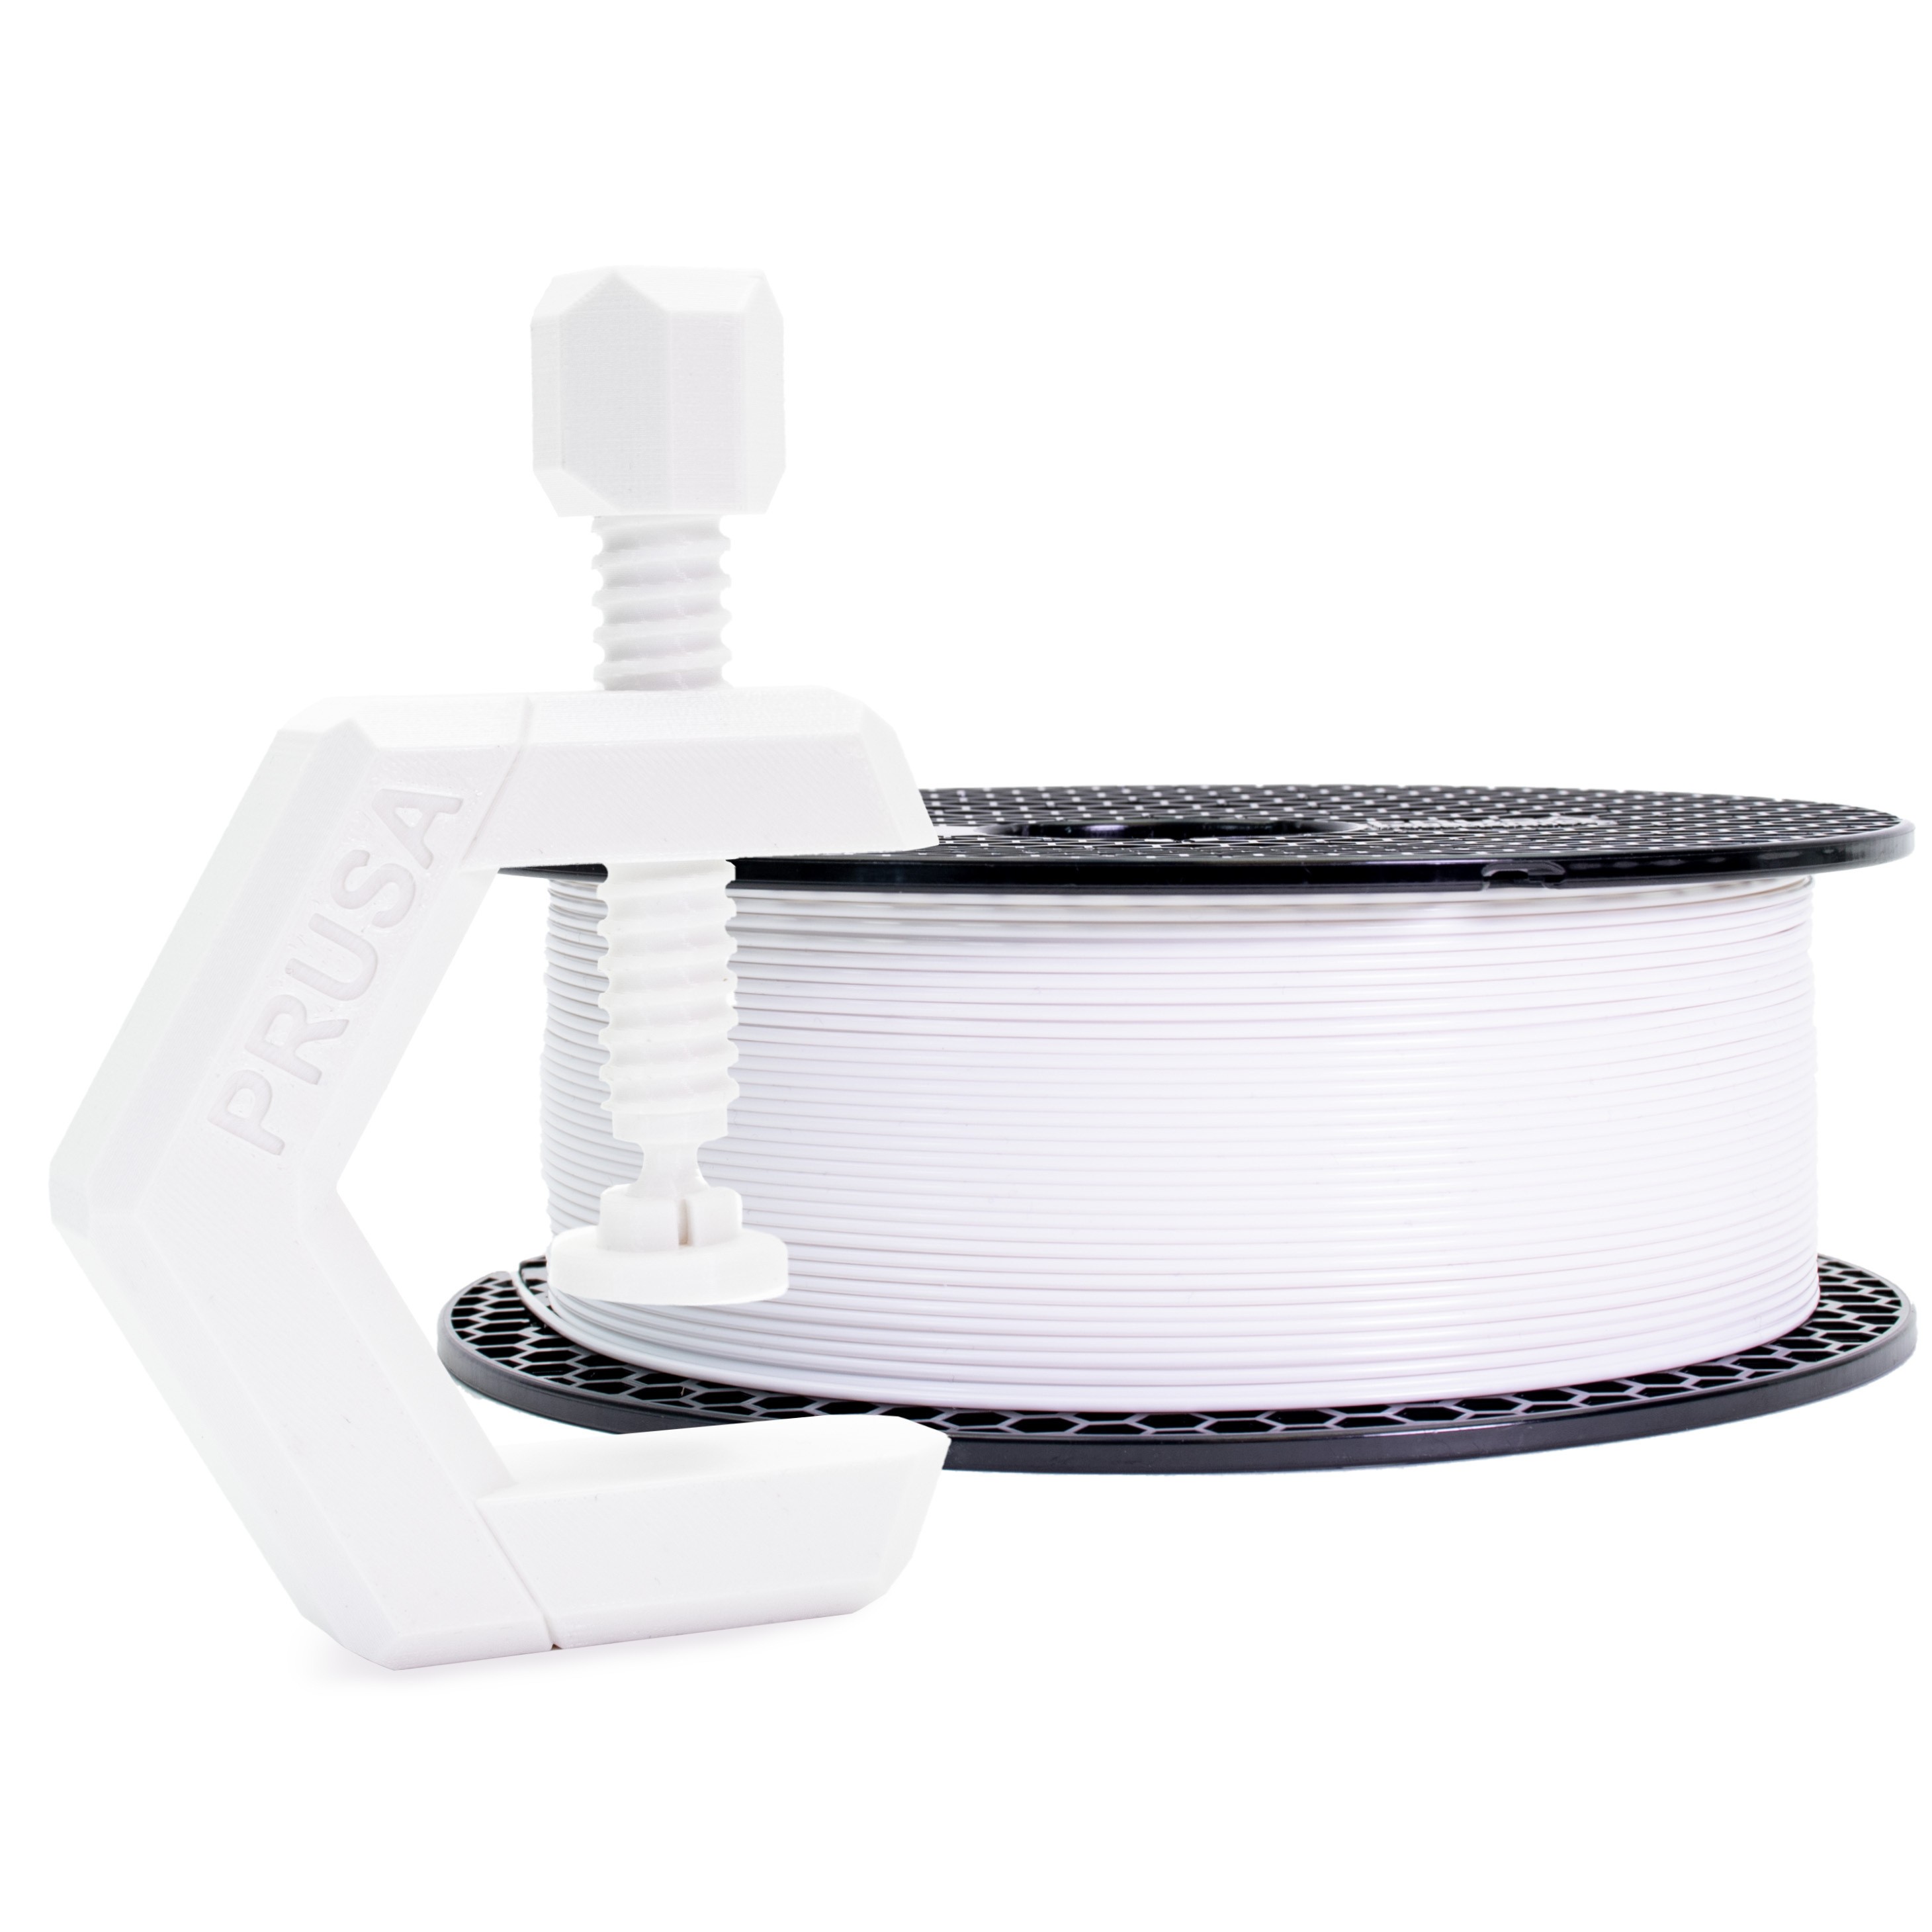 Prusament PETG Signal White 1kg  Stampanti 3D Original Prusa